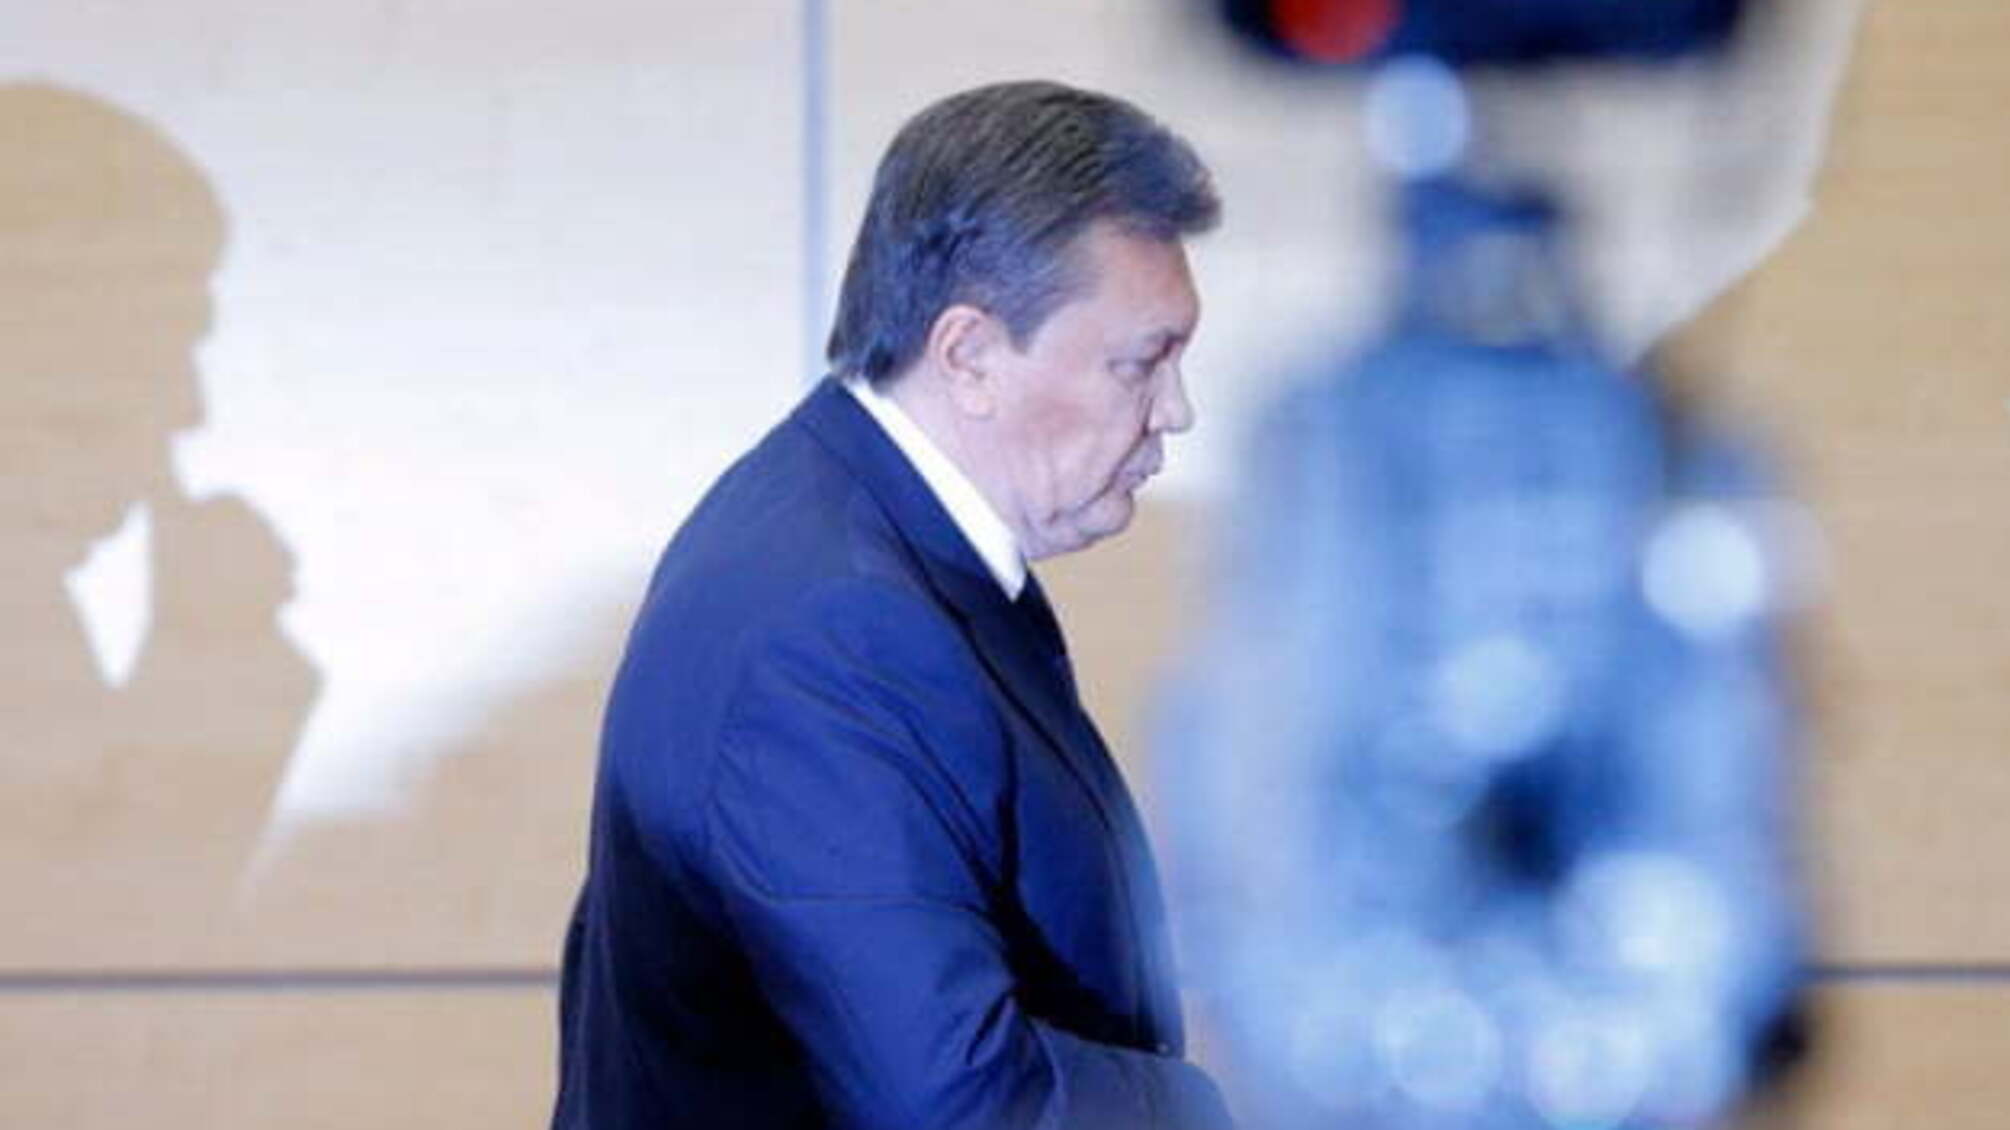 Розстріл Майдану: суд про заочне слідство для Януковича вивчав письмові докази